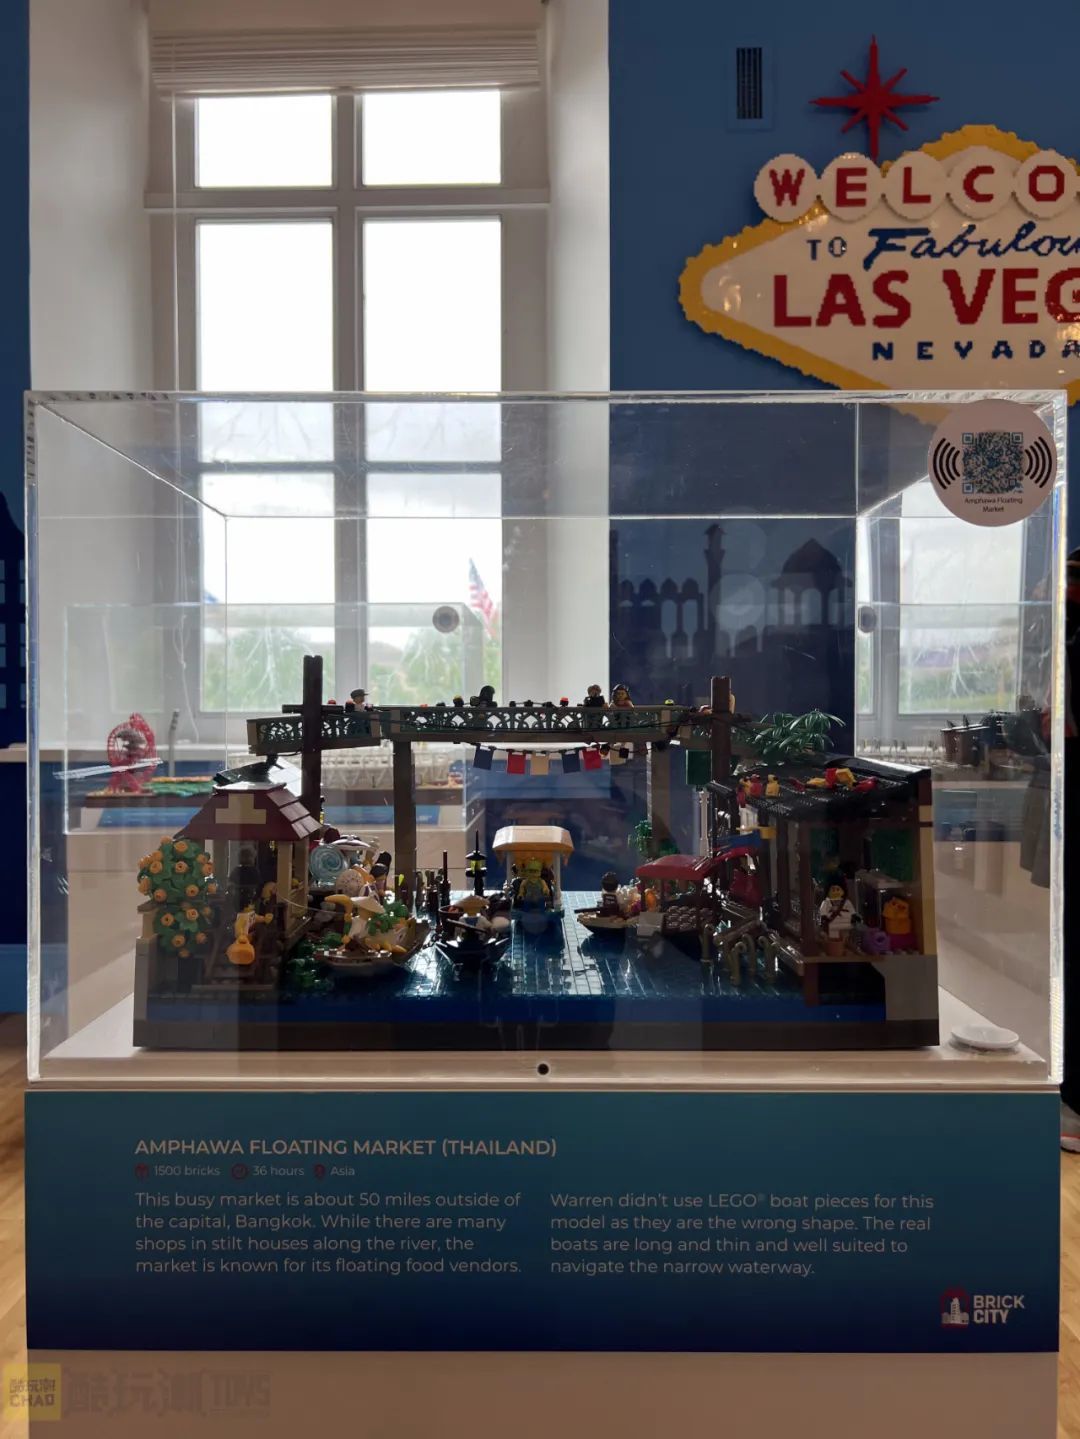 【周邊專區】美國國家博物館Brick City積木展——沃倫·埃爾斯莫爾個人作品展-第0張